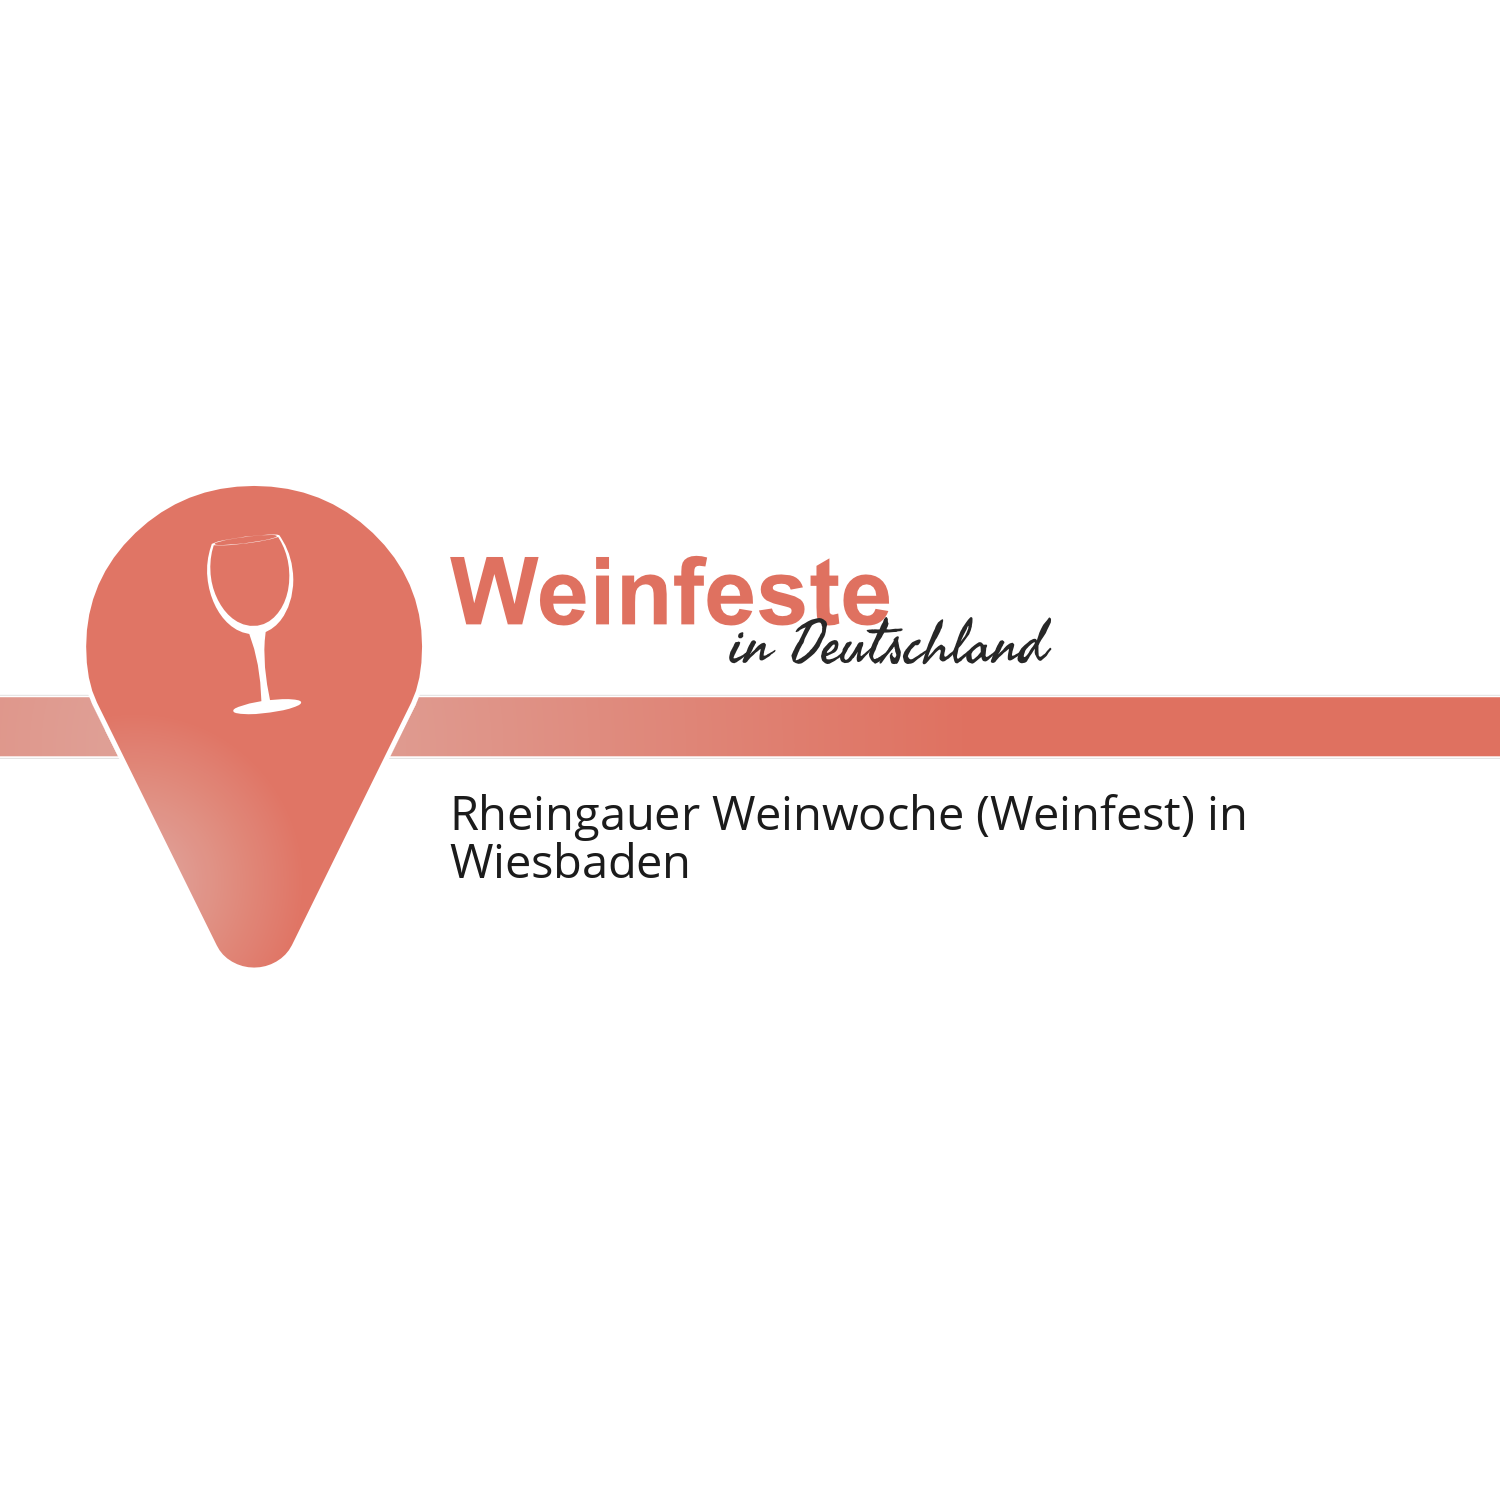 Rheingauer Weinwoche (Weinfest) in Wiesbaden